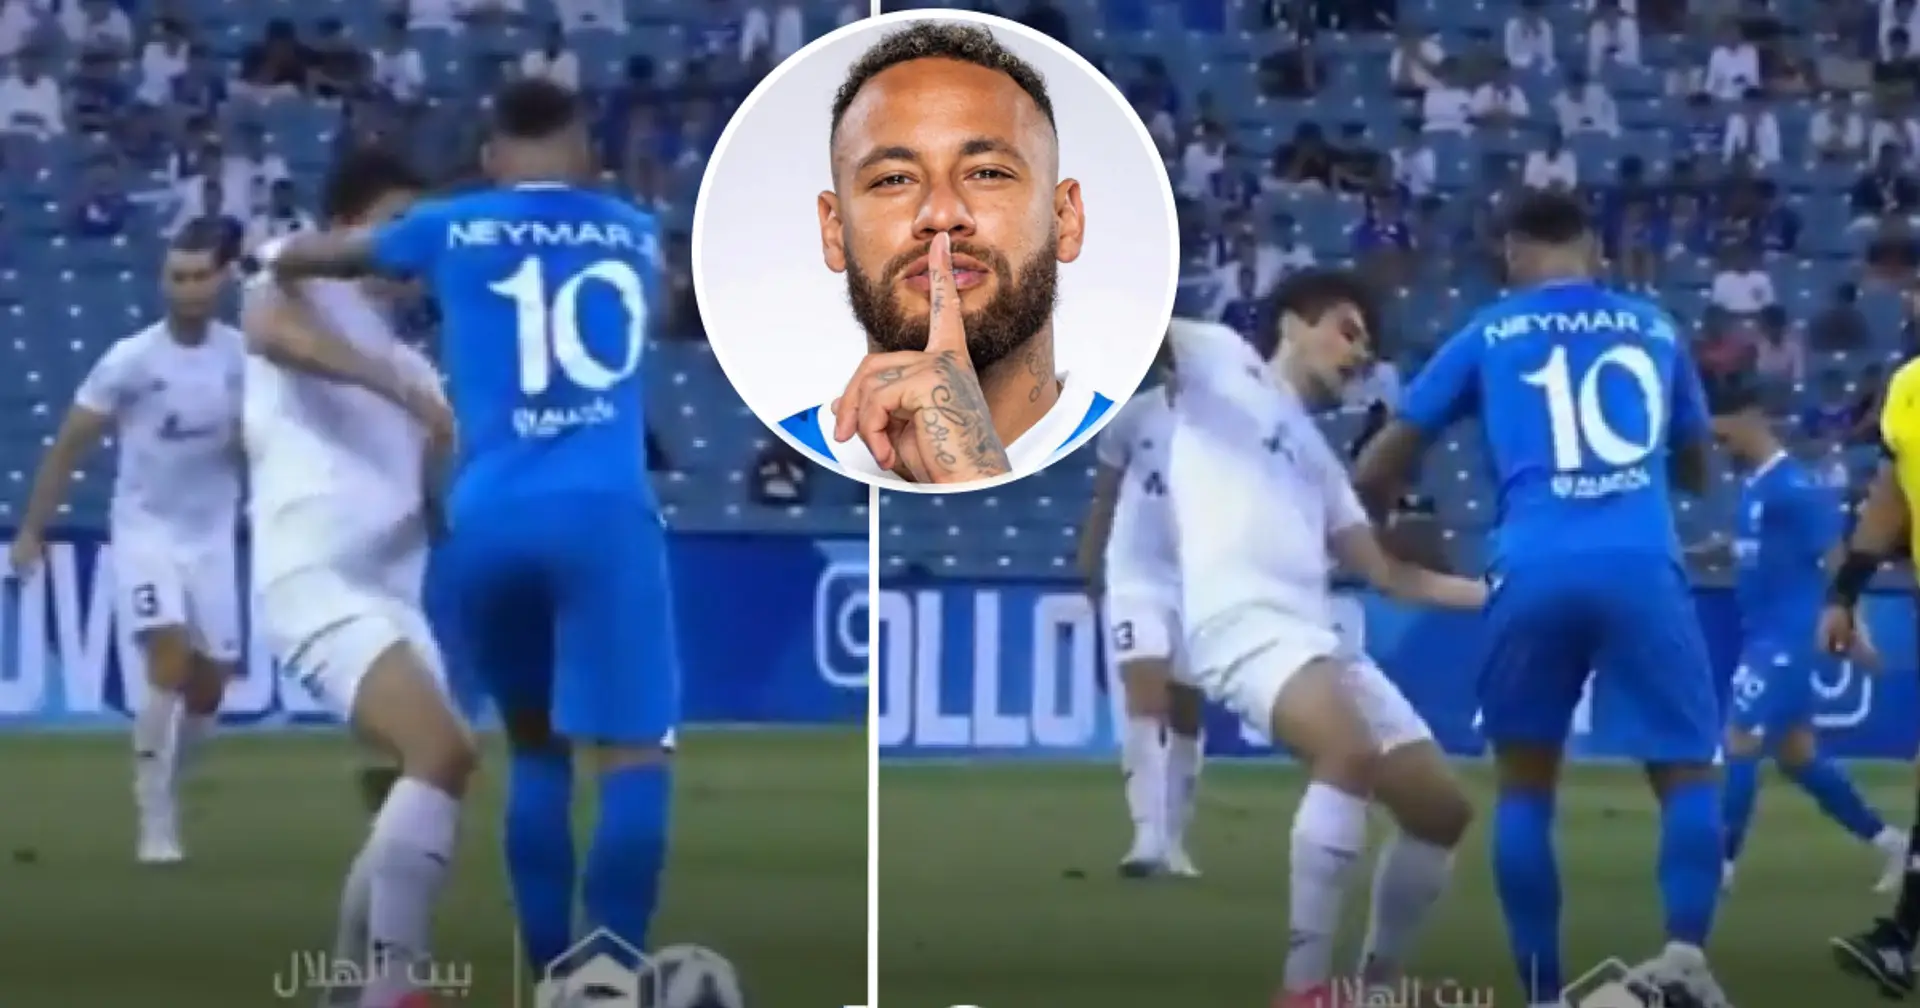 Le mauvais comportement de Neymar en Ligue saoudienne filmé – il pousse un joueur vers le sol et lui donne un coup de pied avec le ballon